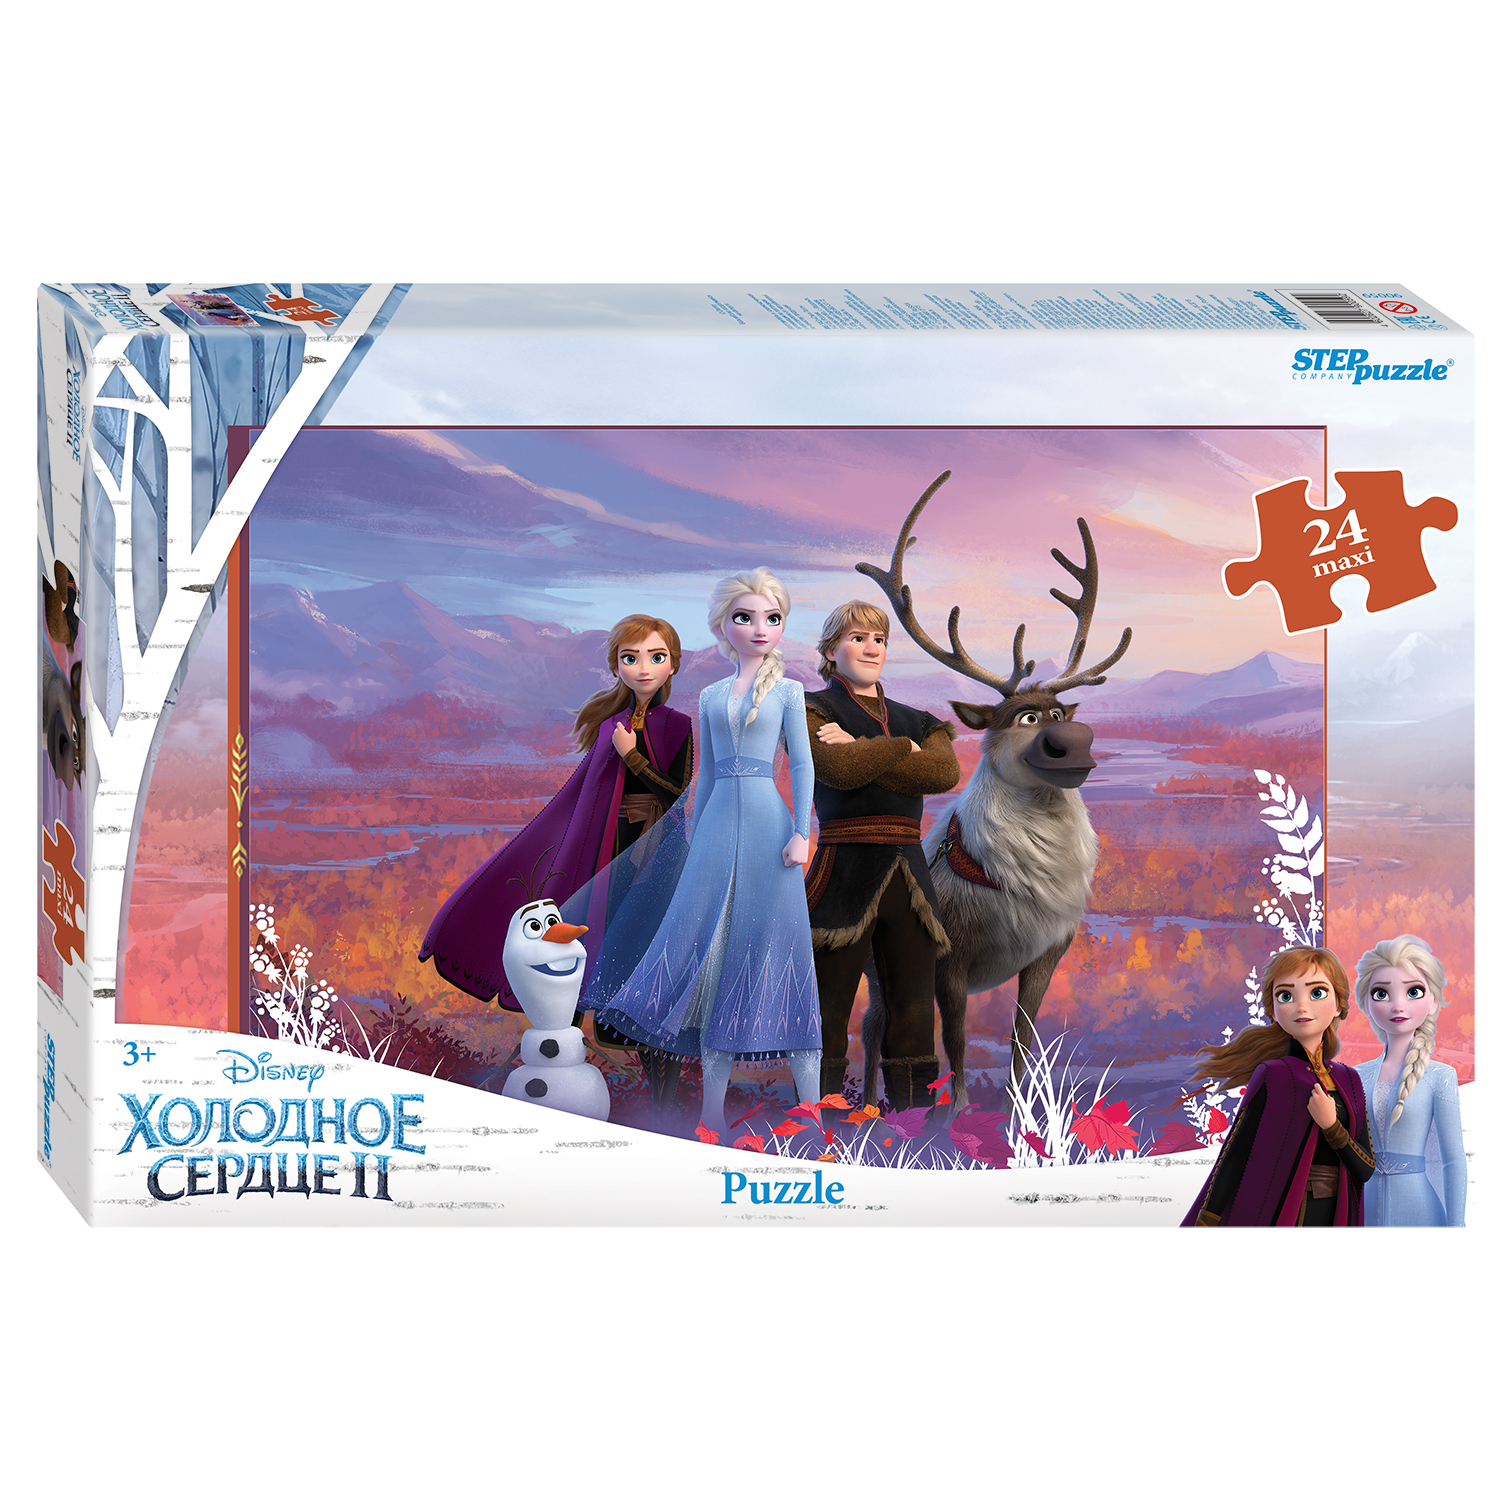 Мозаика "puzzle" maxi 24 "Холодное сердце - 2" (Disney) 90059